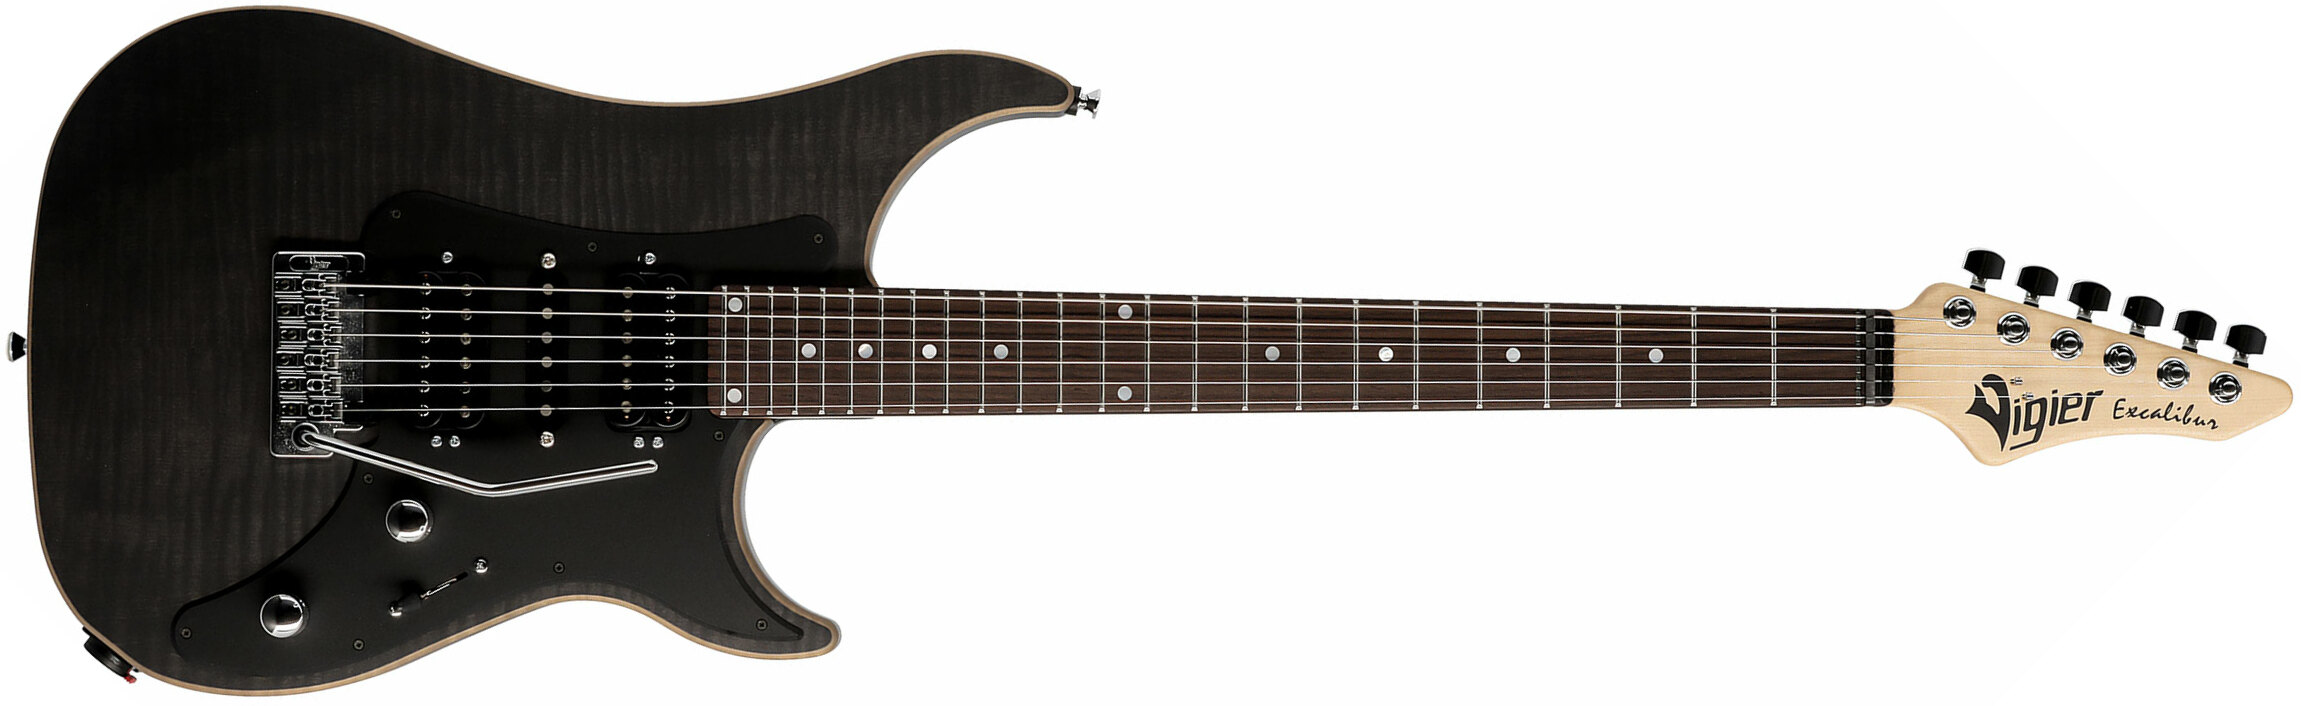 Vigier Excalibur Special Hsh Trem Rw - Black Diamond Matte - E-Gitarre in Str-Form - Main picture